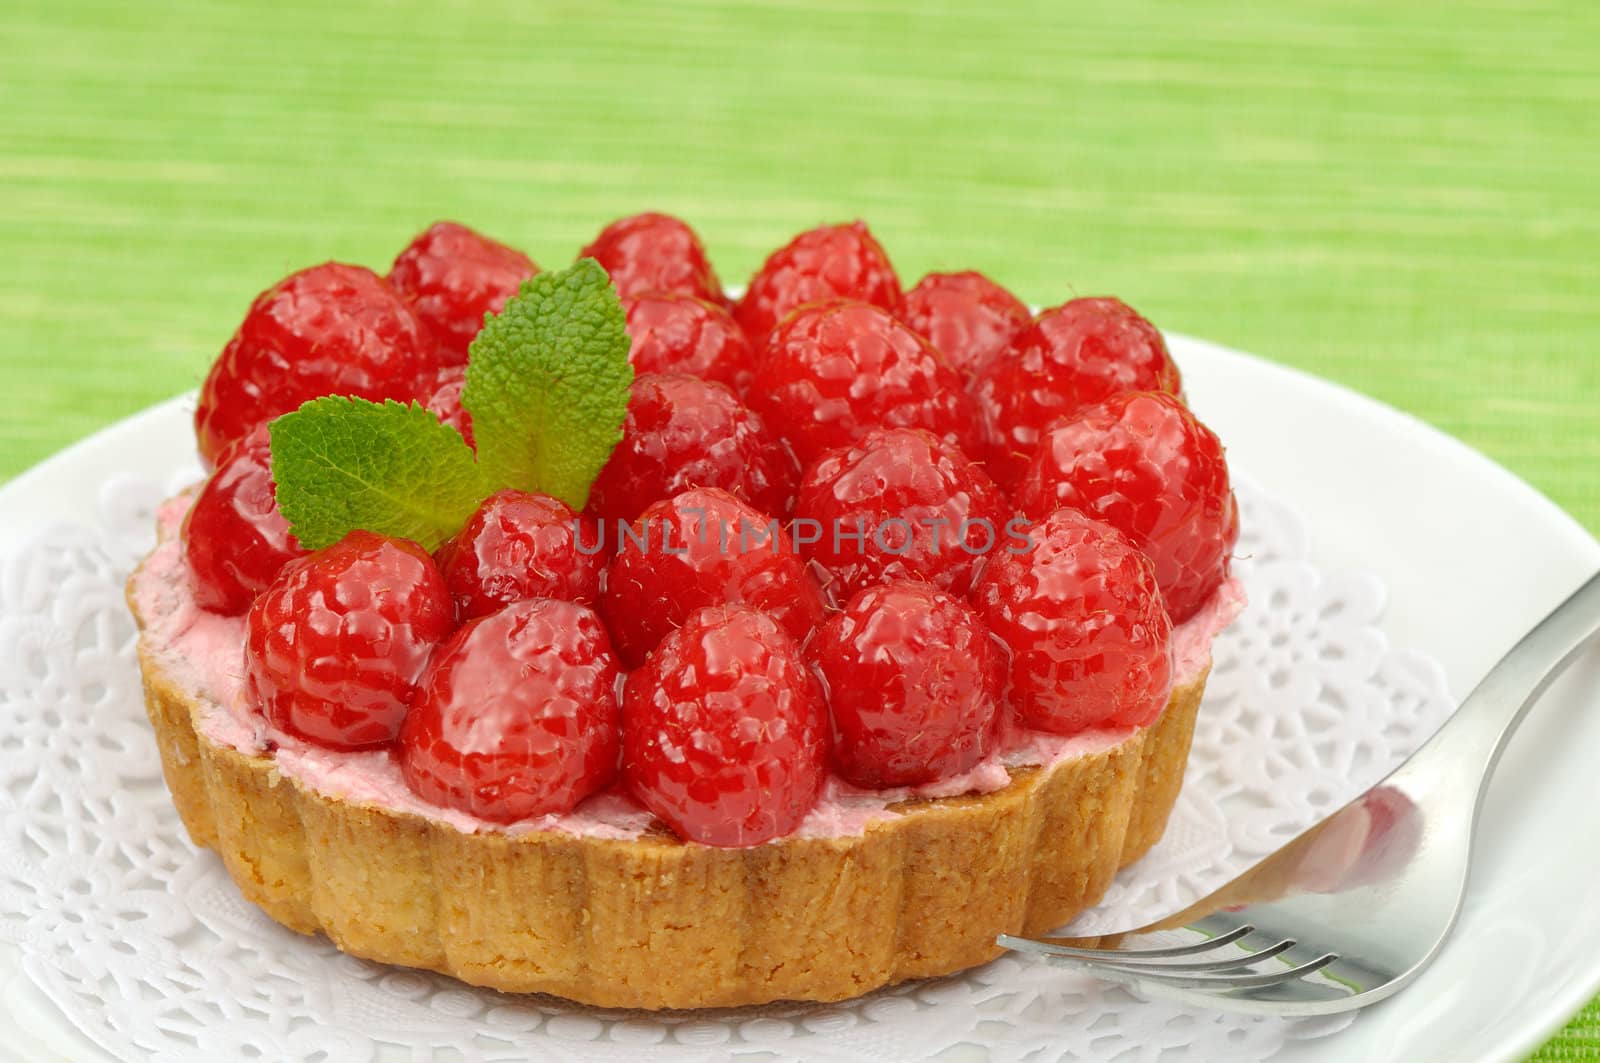 Raspberry tart by Hbak